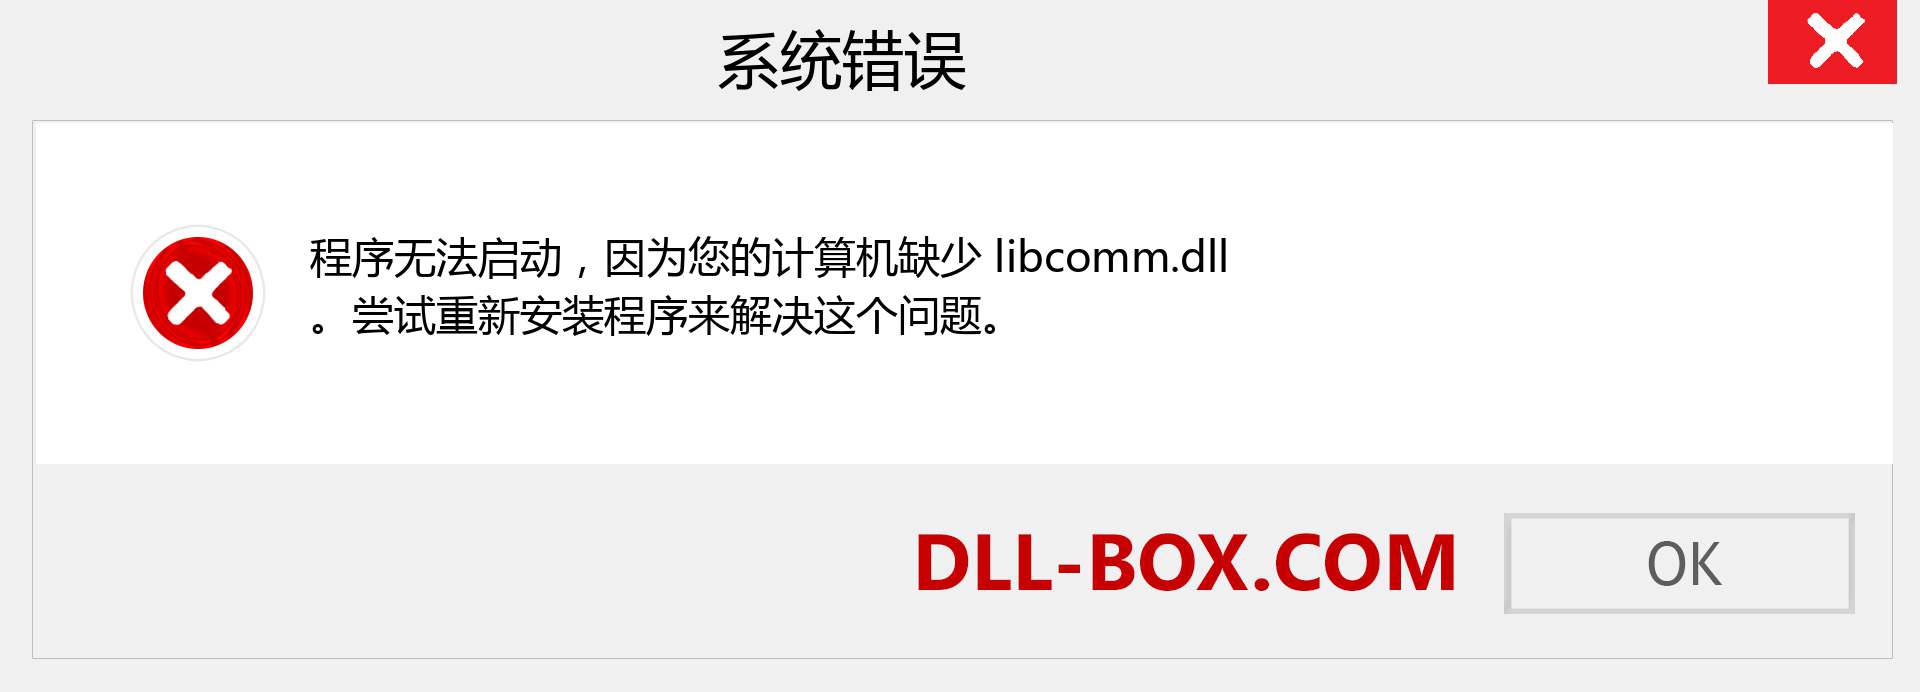 libcomm.dll 文件丢失？。 适用于 Windows 7、8、10 的下载 - 修复 Windows、照片、图像上的 libcomm dll 丢失错误